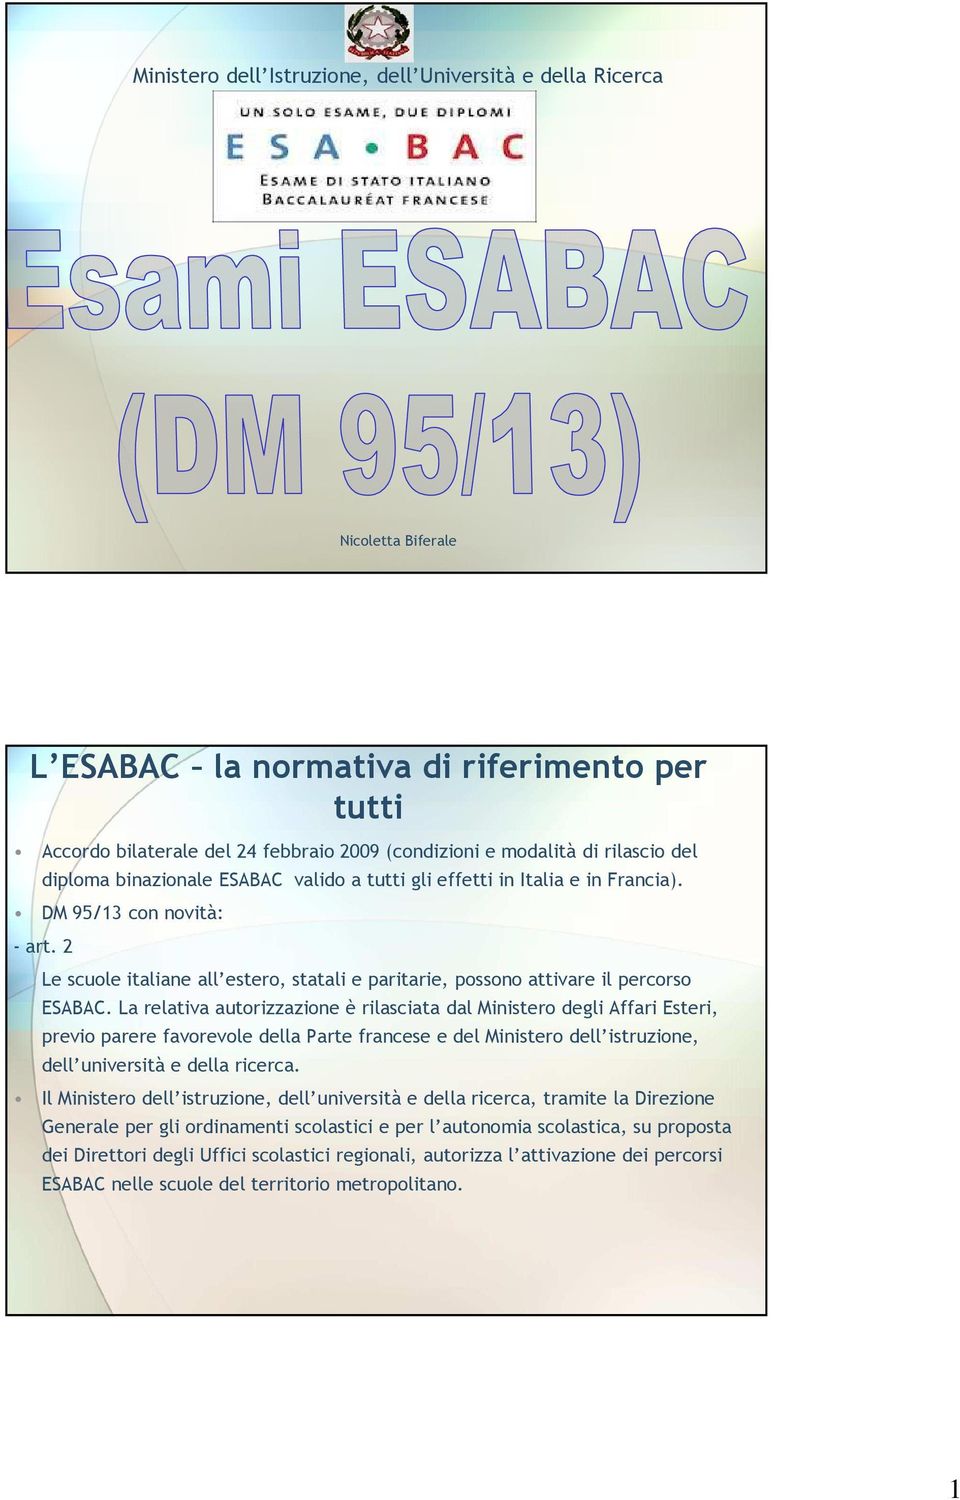 2 Le scuole italiane all estero, statali e paritarie, possono attivare il percorso ESABAC.